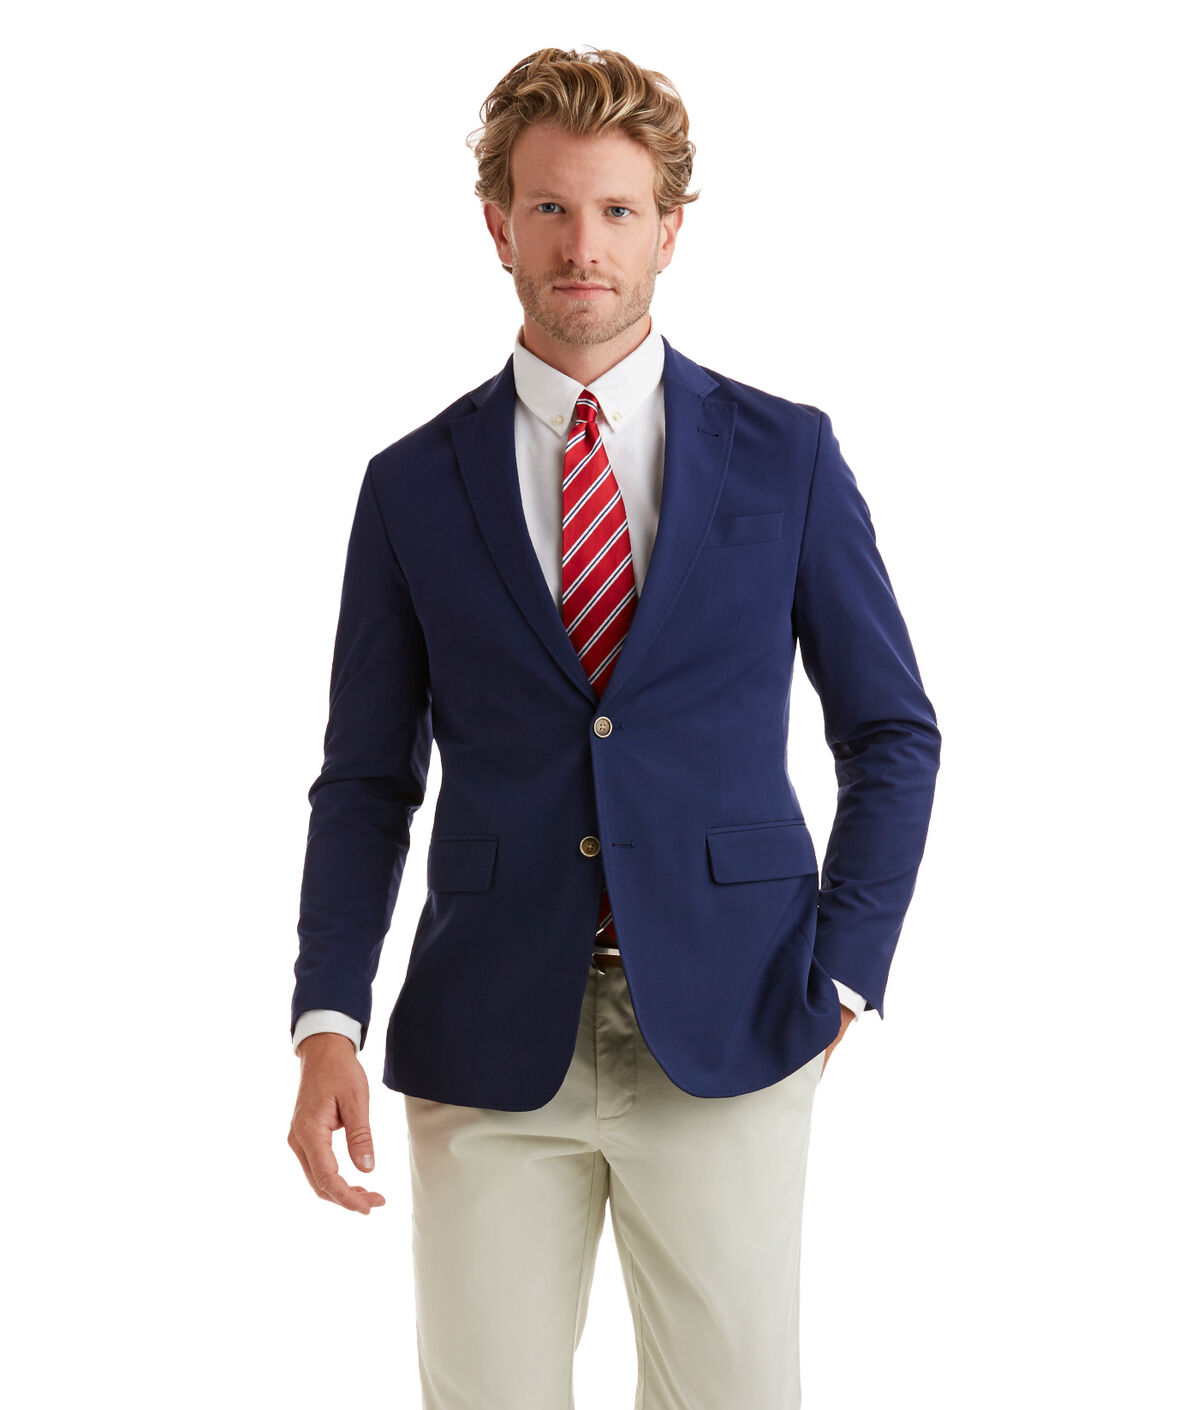 Men's Blazers and Sport Coats from Vineyard Vines